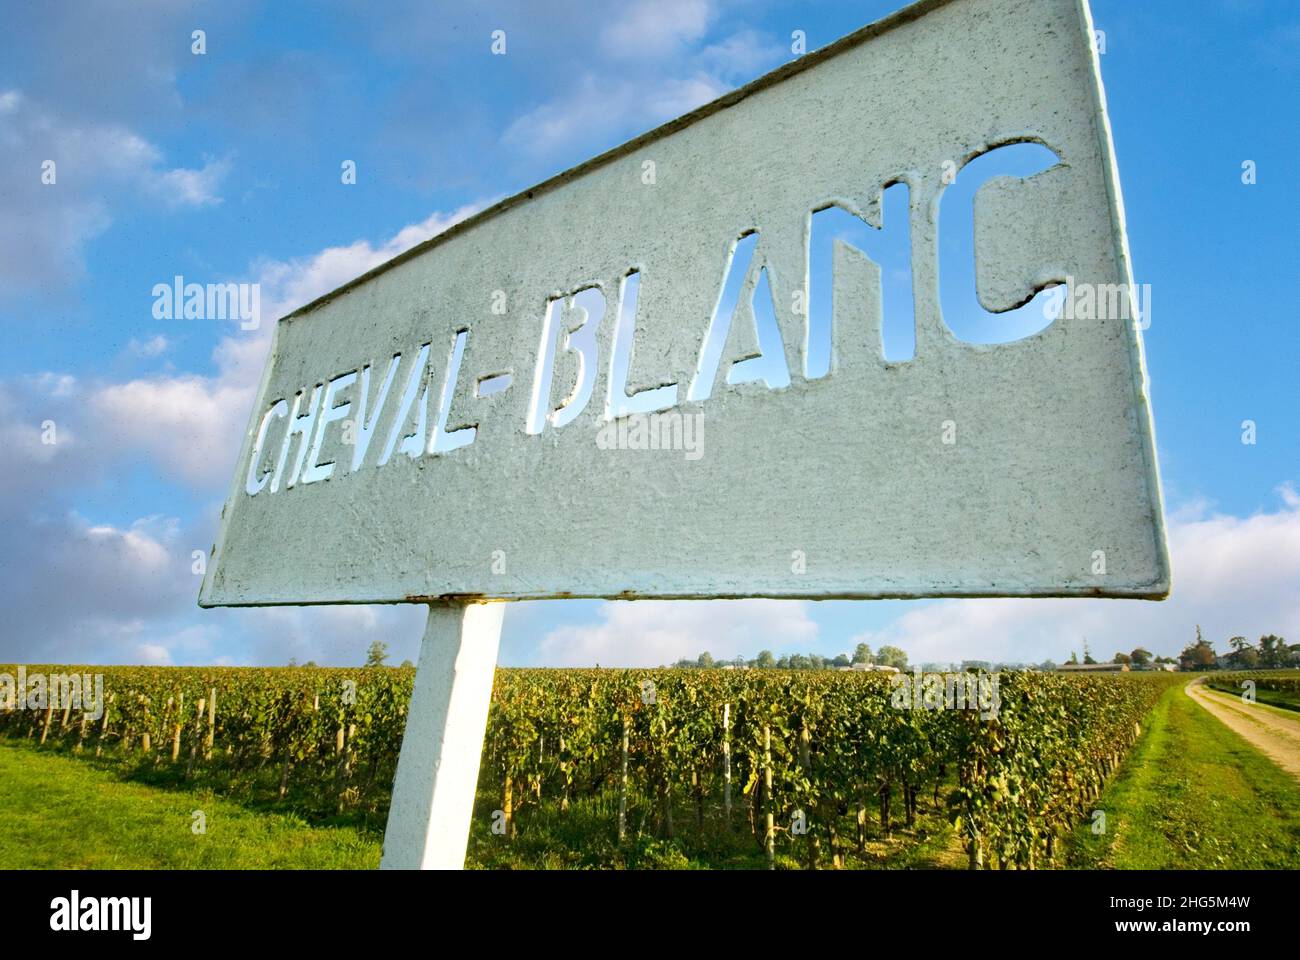 Château Cheval Blanc señal de entrada y viñedos con cielo azul, en la entrada a la famosa y fina producción de vinos rojos Grand Cru classé en Saint-Émilion, región vinícola de Burdeos de Francia señal Cheval Blanc con viñedo otoñal detrás de Saint Emilion Gironde Francia Foto de stock